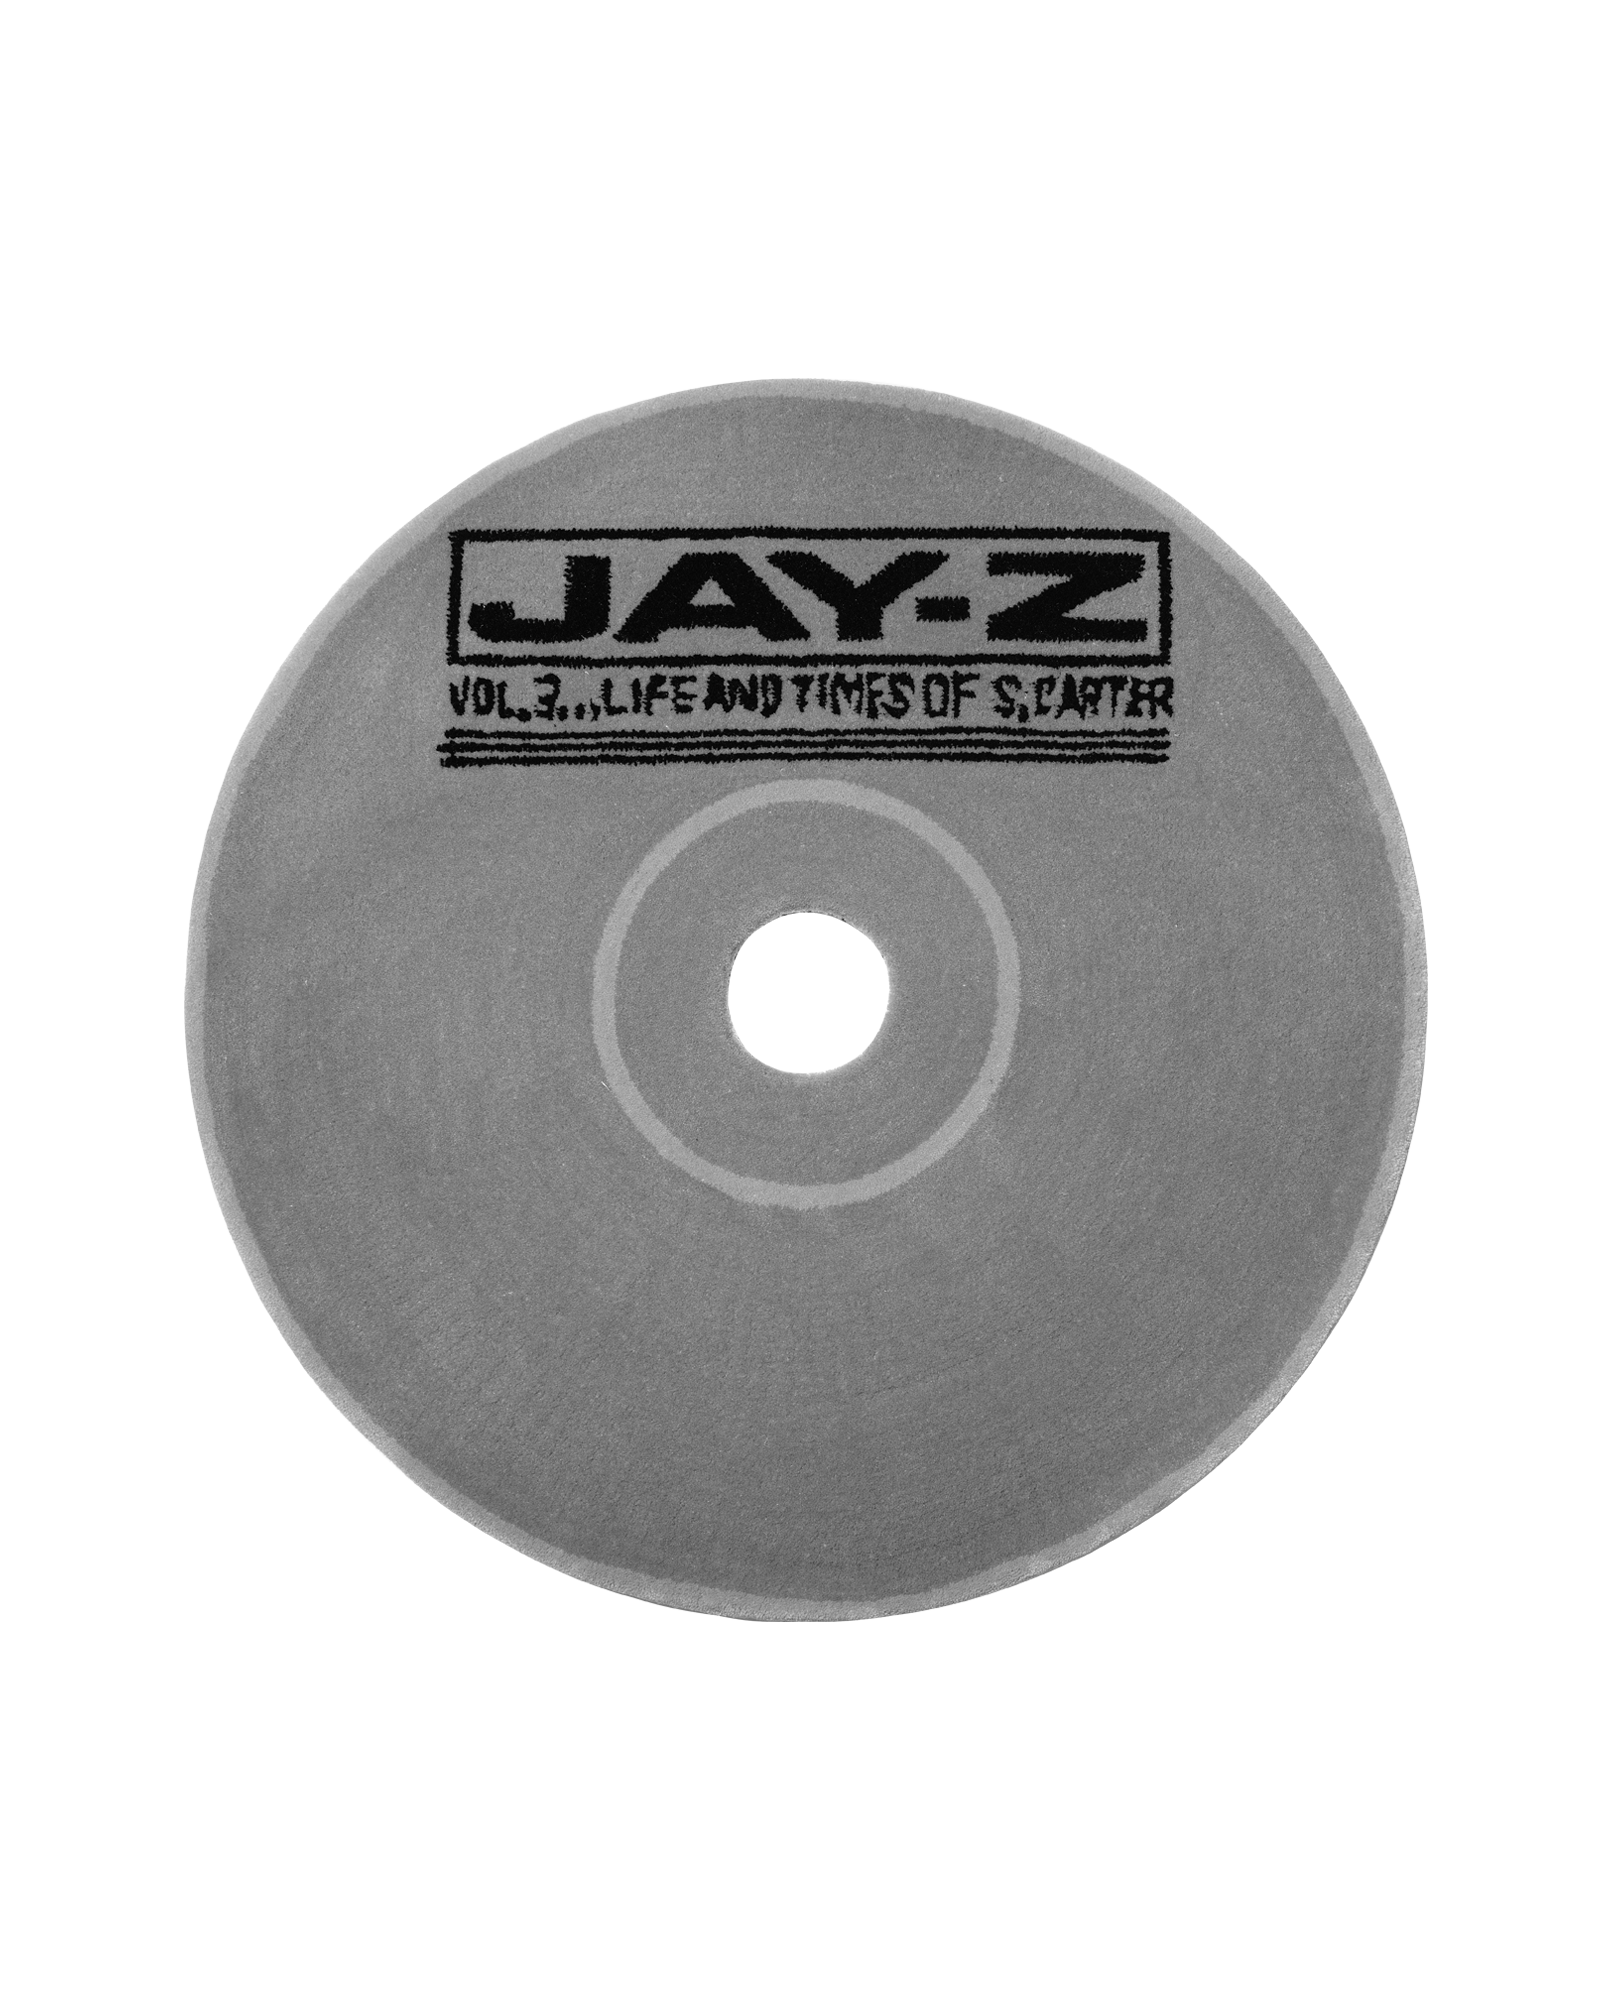 [RENTAL] Handmade CD Rug (Jay-Z / Vol. 3)